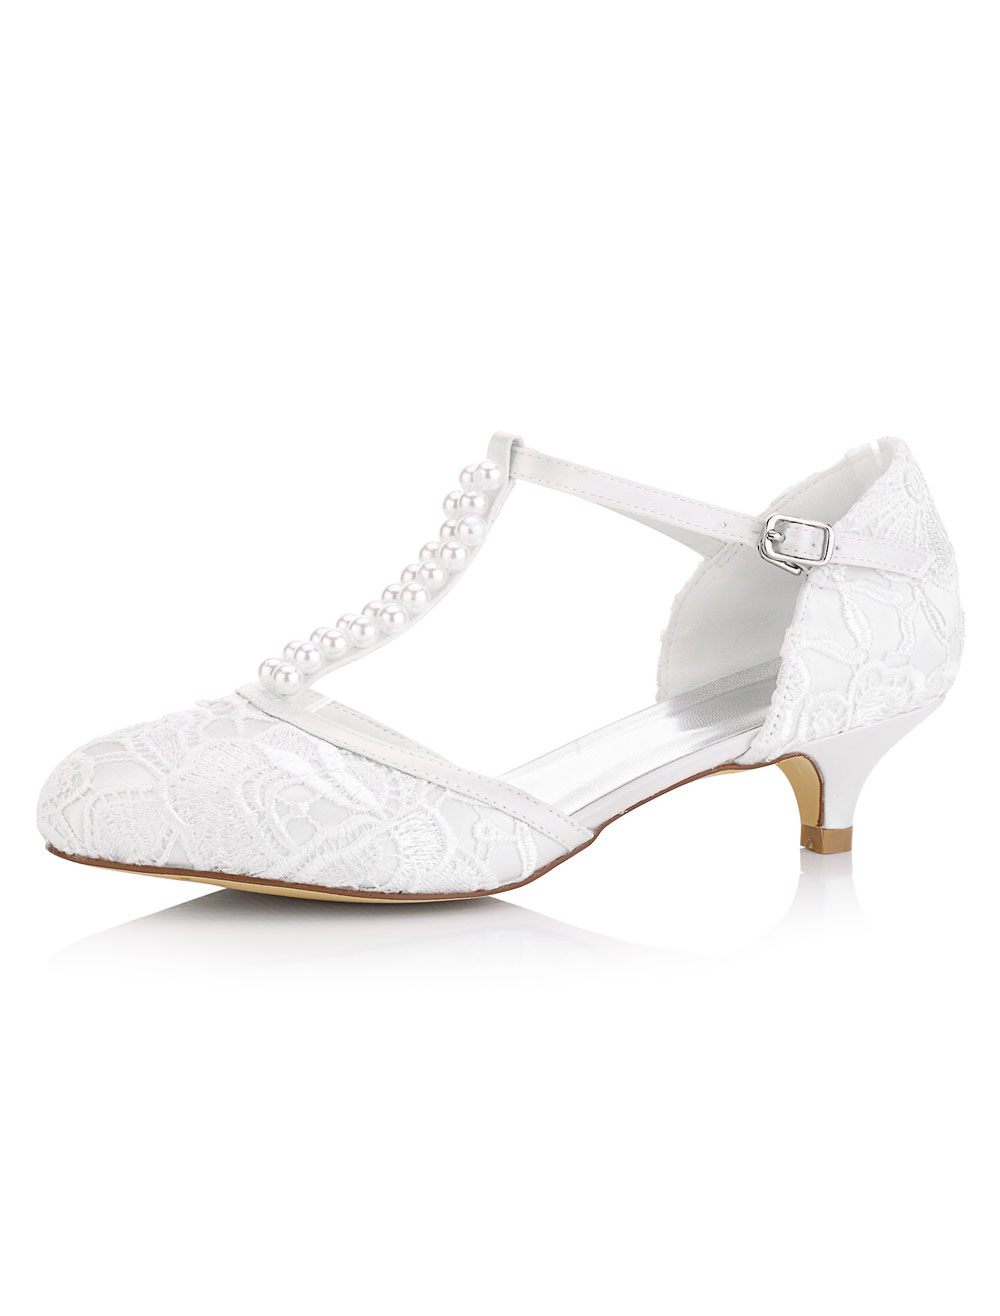 white bridal kitten heels